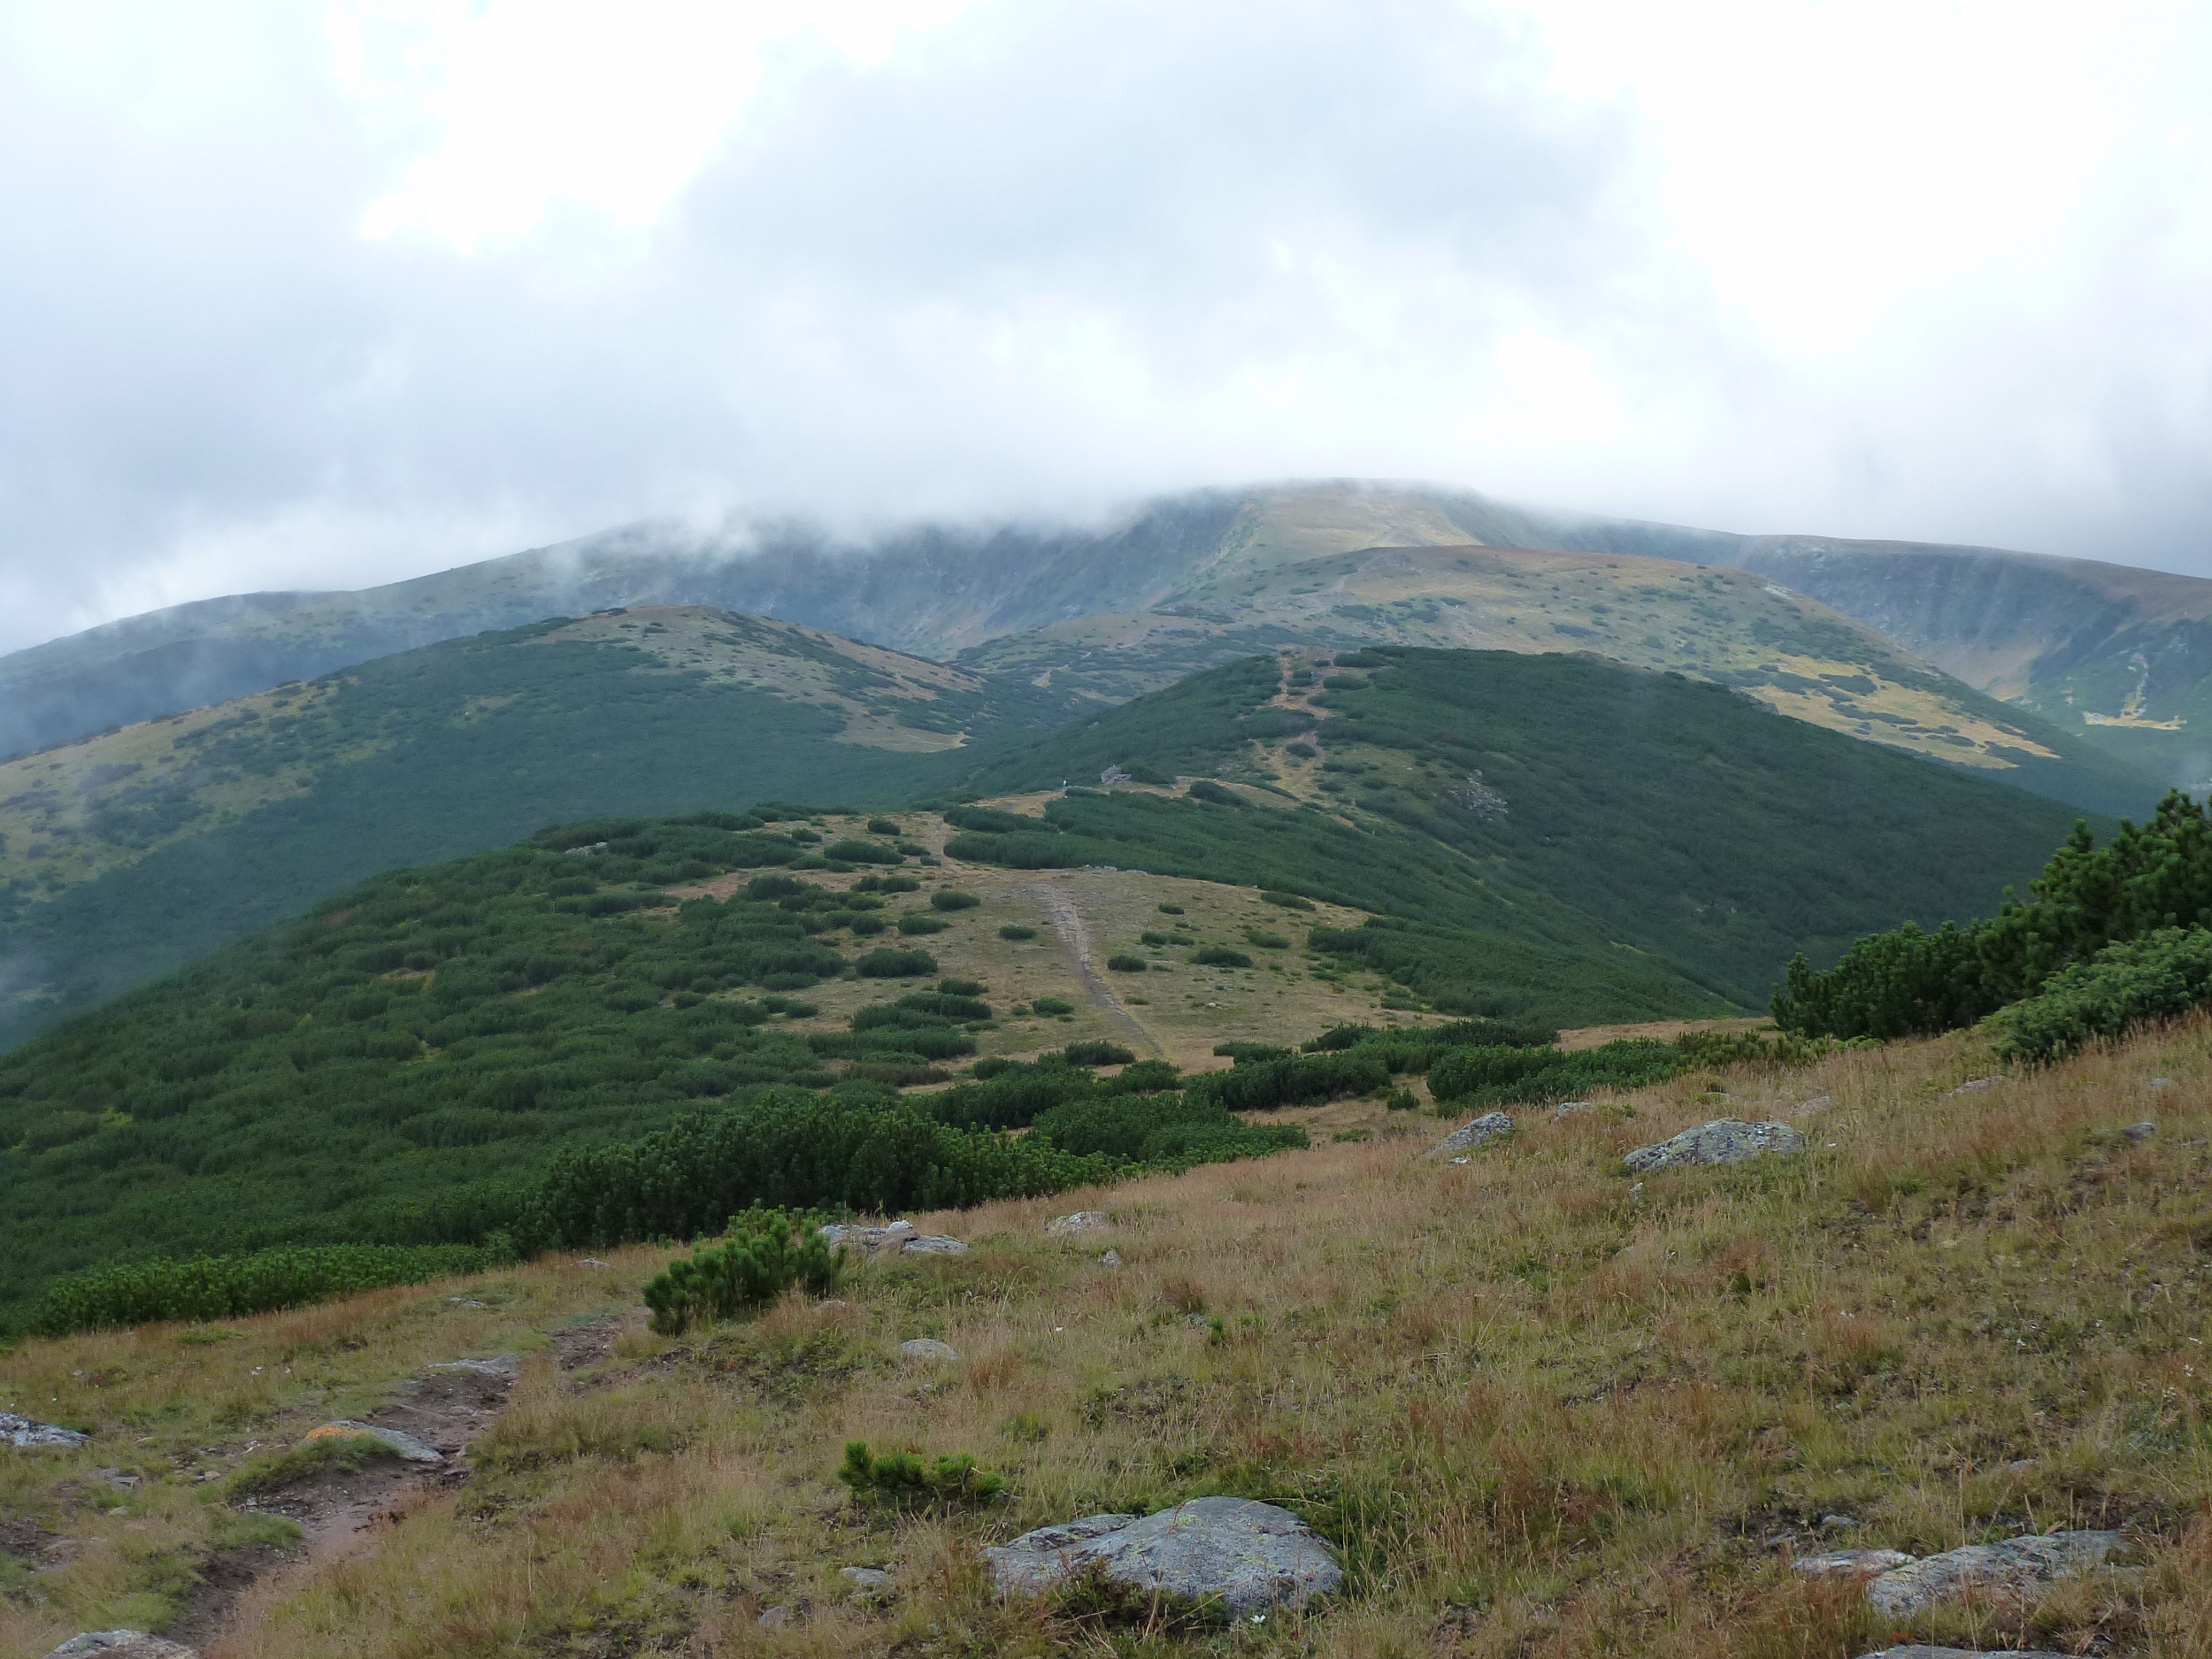 Munții Cindrel / Nenáročný oblý hřeben.